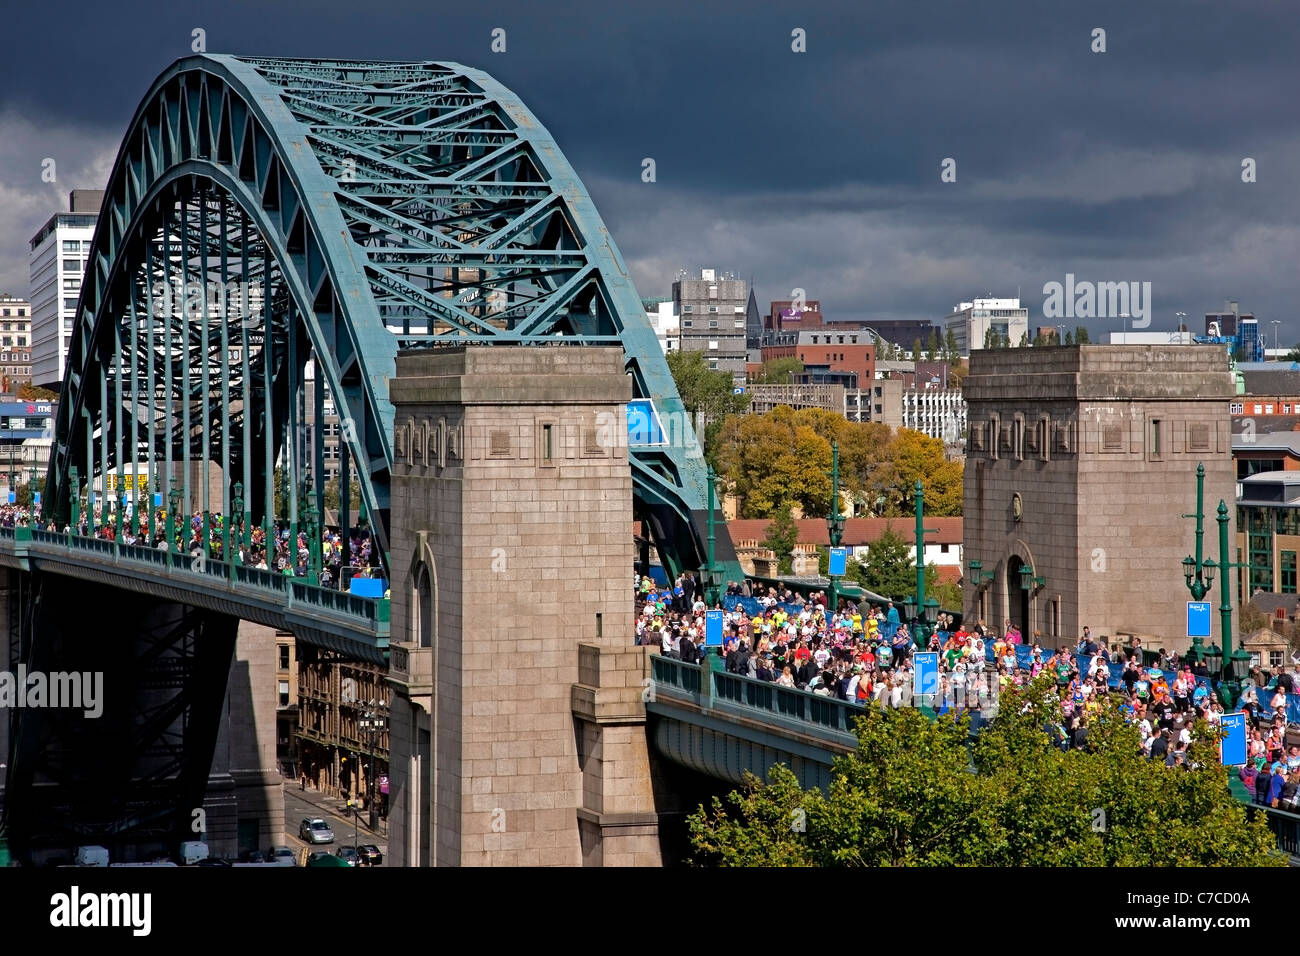 Los corredores en el 2011 Bupa Great North Run viniendo sobre el Tyne Bridge en Newcastle, vista desde el lado de Gateshead Tyne y desgaste Foto de stock